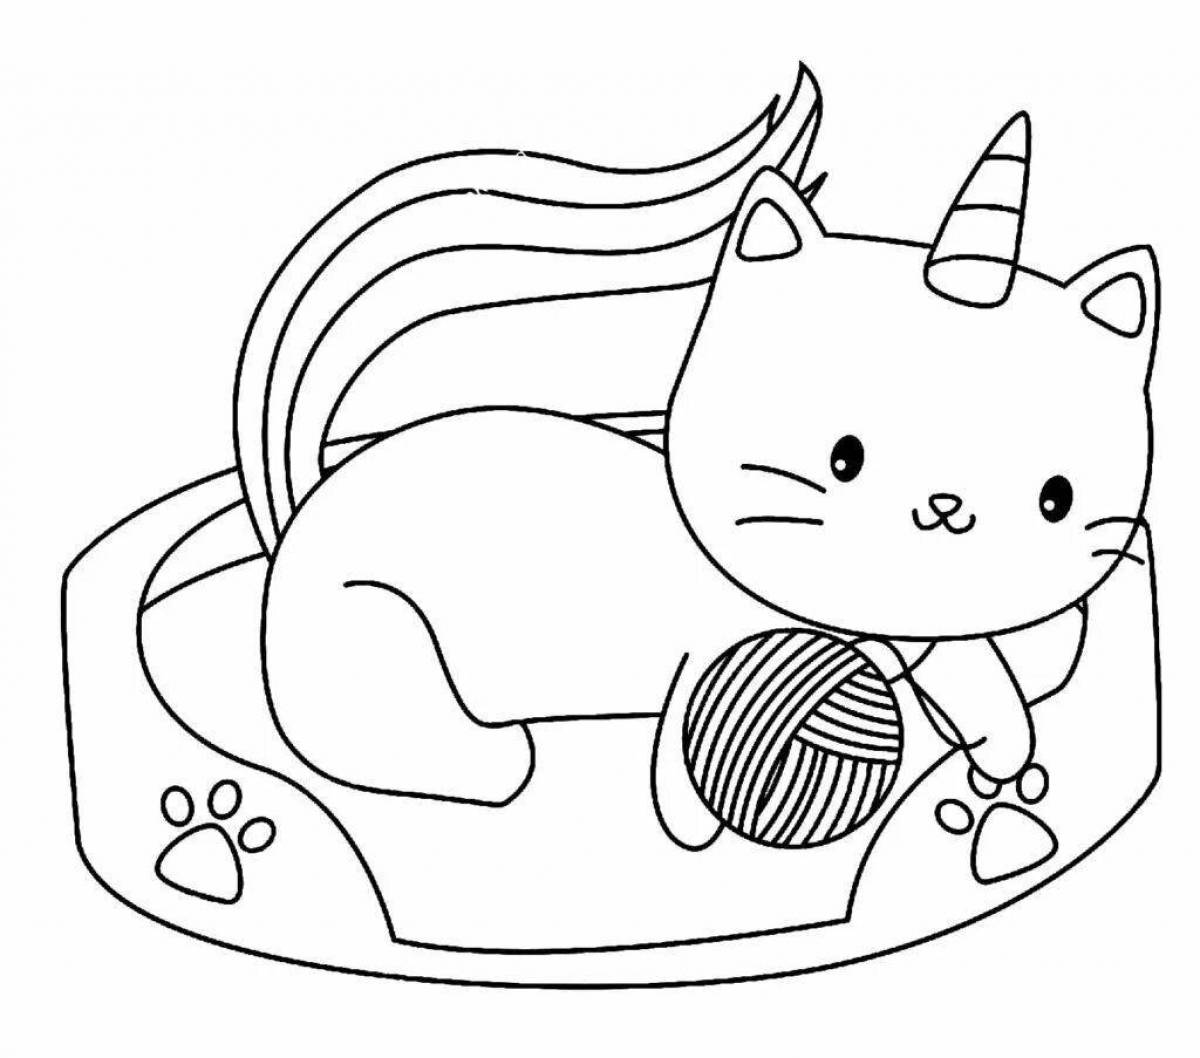 Джаззи раскраска котенок единорог